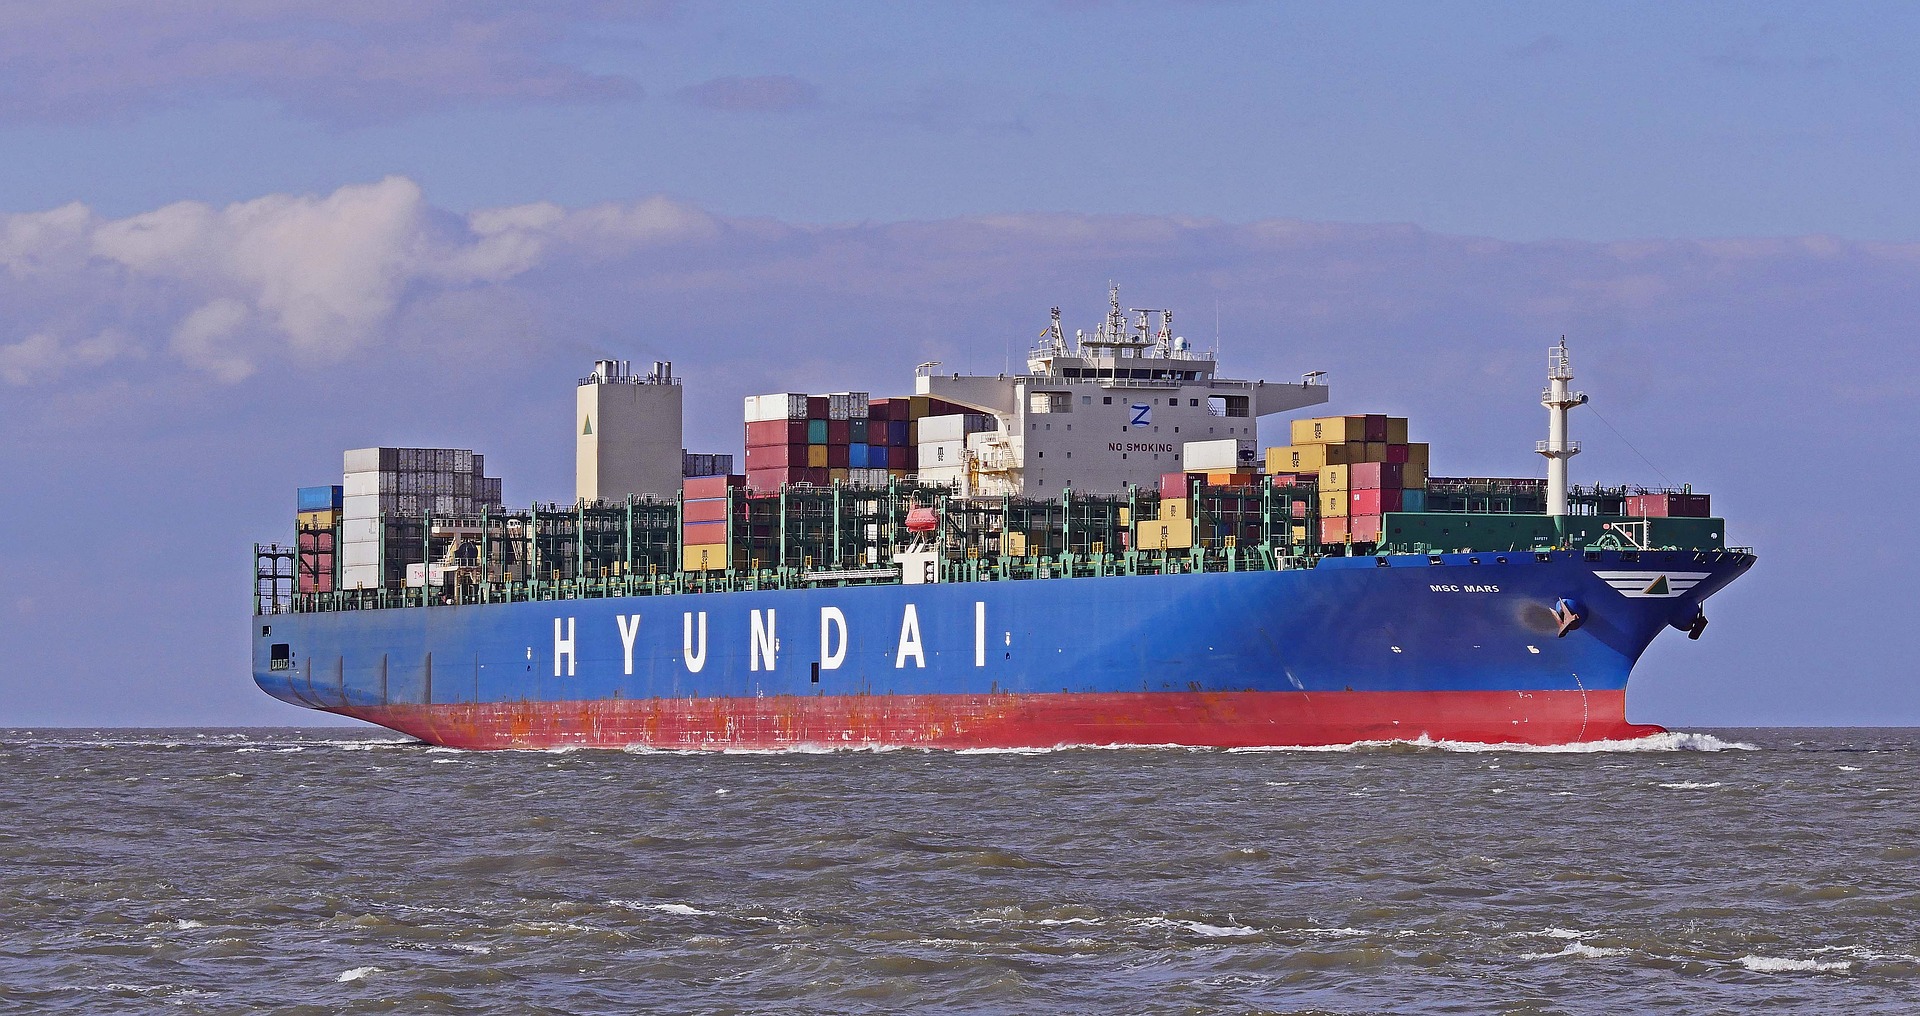 Na zdjęciu statek -kontenerowiec. Na prawej burcie - powyżej linii zanurzenia ma napis Hyundai. KOntenerowiec jest na morzu. Morze w kolorze jest szare, niebo niebieskie z chmurami. Na statku widać poukładane różnokolorowe kontenery oraz mostek kapitański. Burty statku są pomalowane na granatowo, napis jest biały, a część zanurzająca się w wodzie jest czerwona